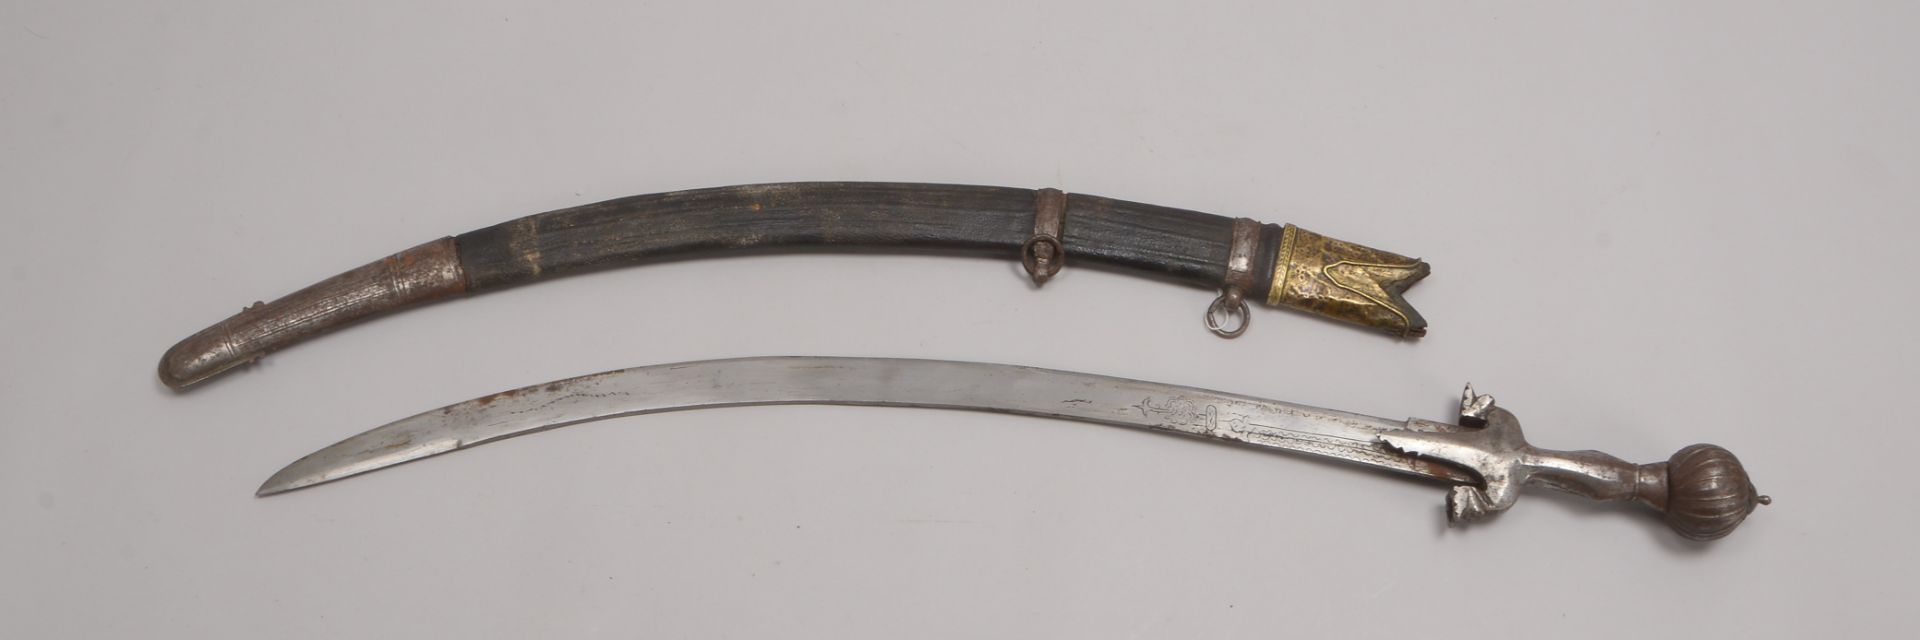 Schwert/Tulwar, Eisen, gebogene/grav. Klinge, Scheide mit Lederbezug und Messing-Appl.